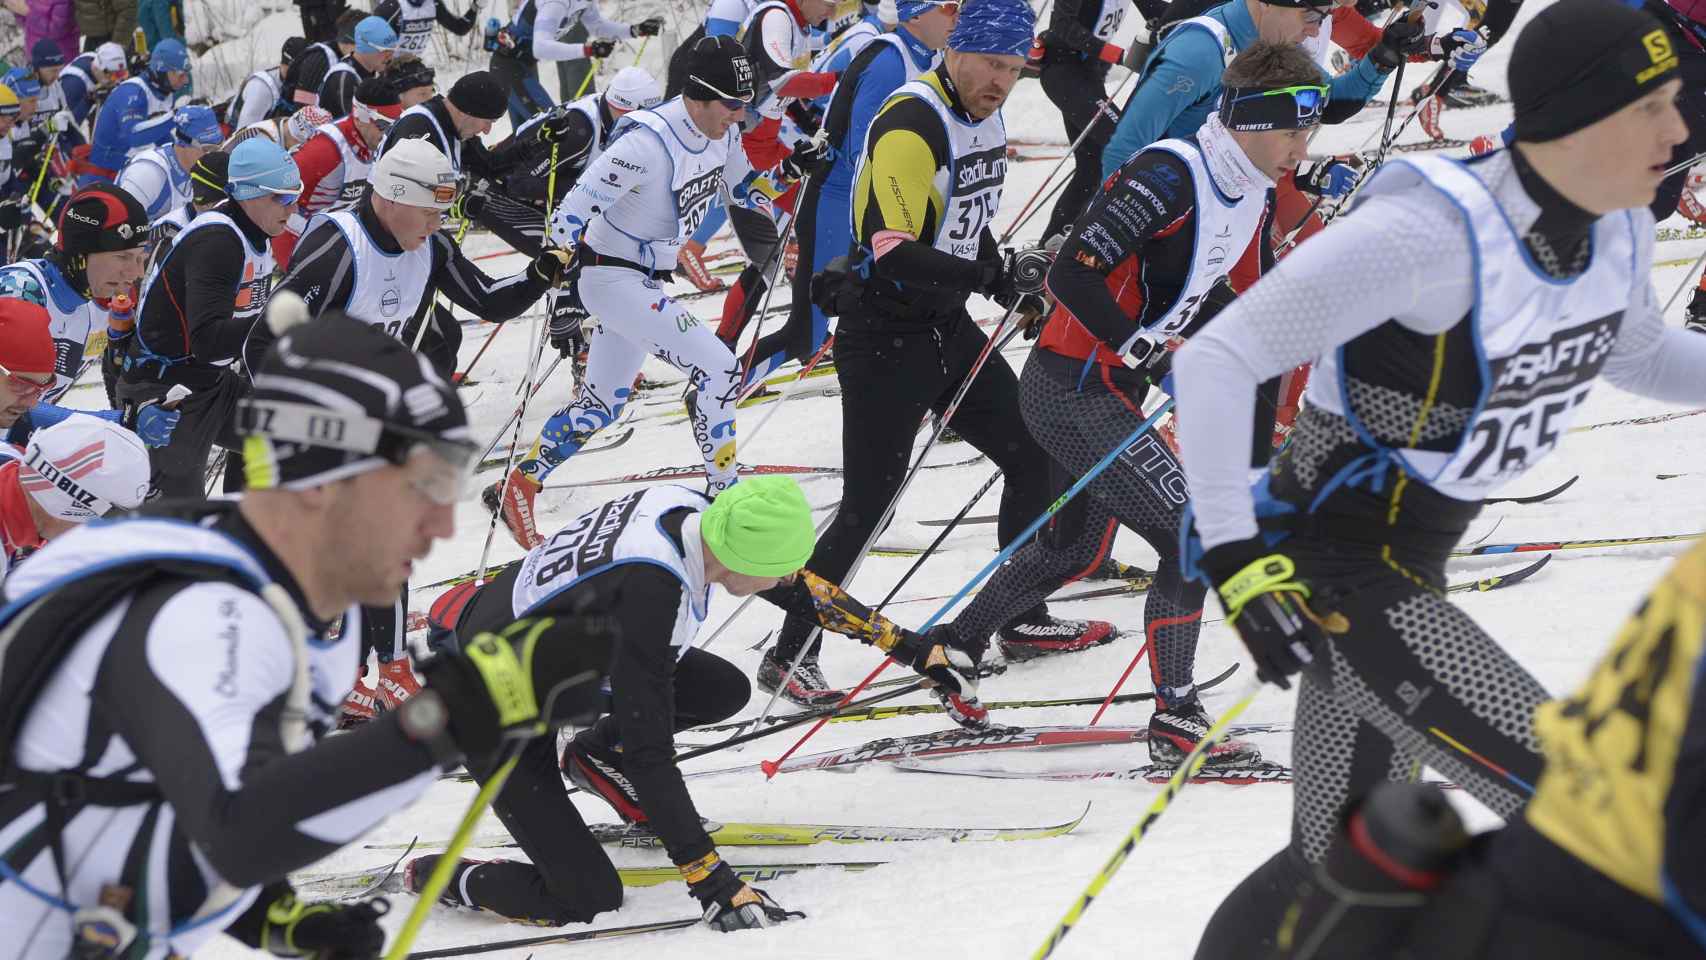 Esquiadores durante la prueba.